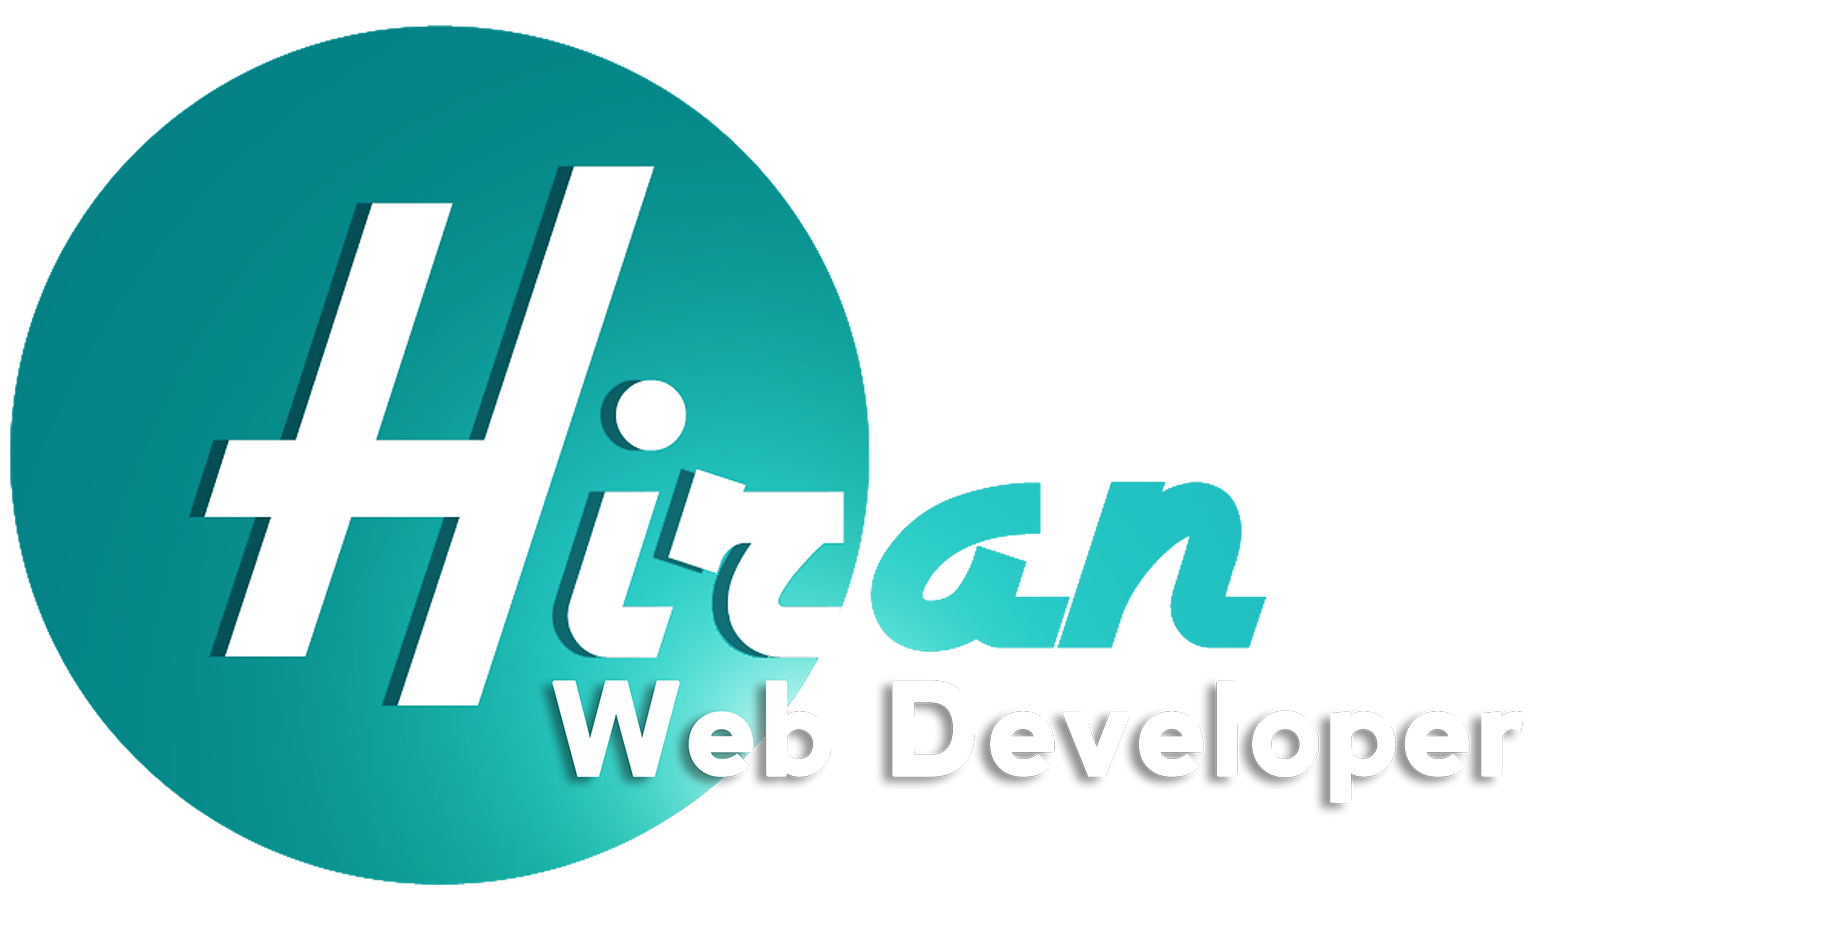 Web design company in trivandrum